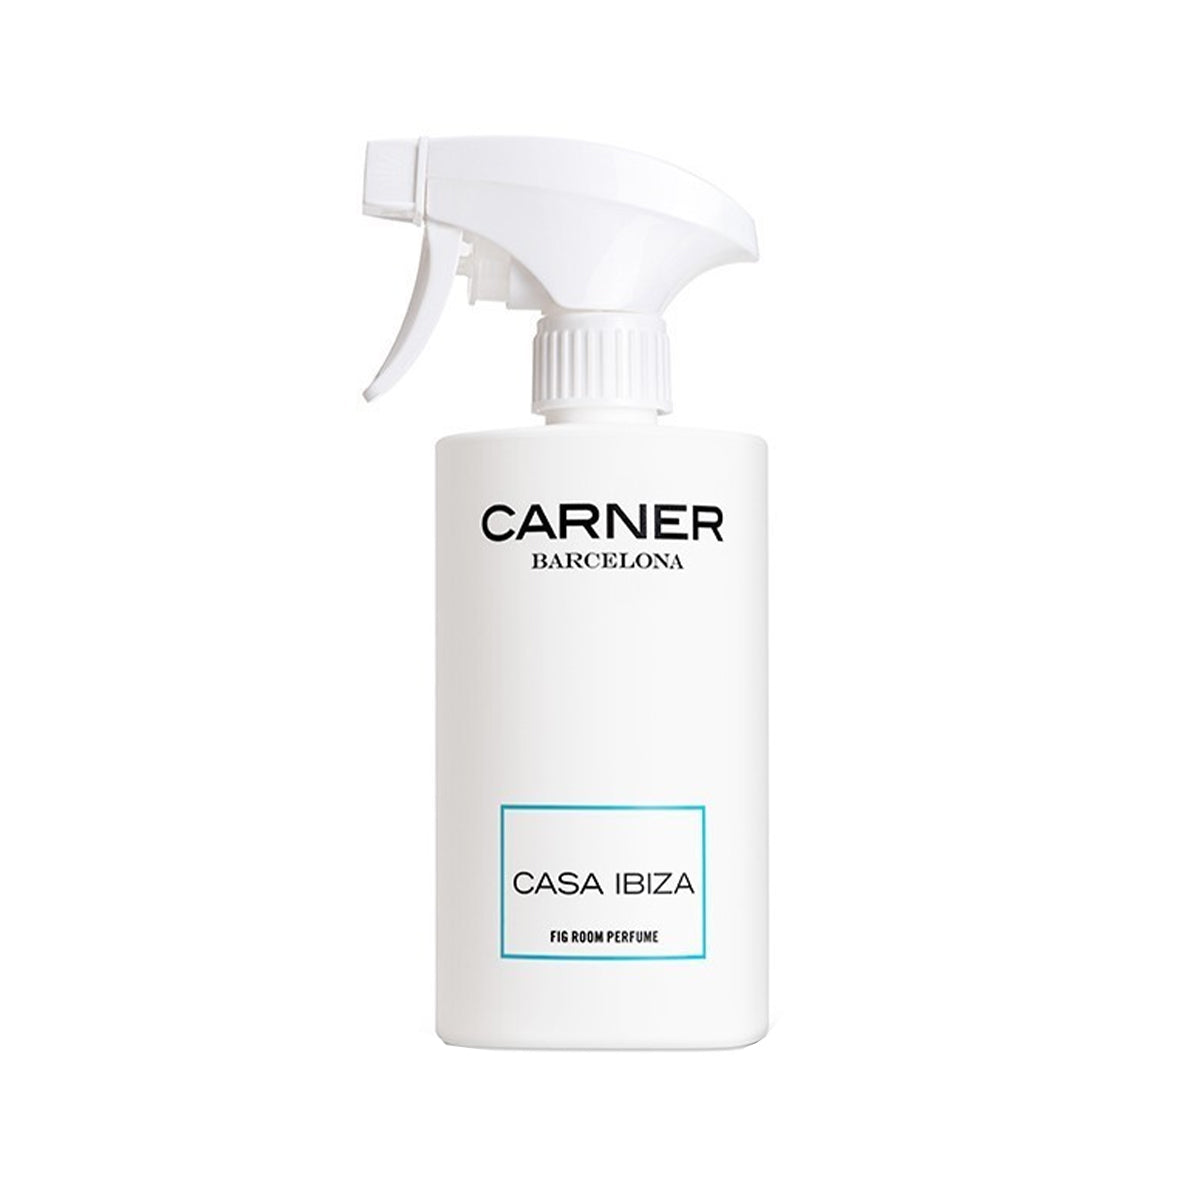 Casa Ibiza - Carner Barcelona - Fig Room Perfume 500ml